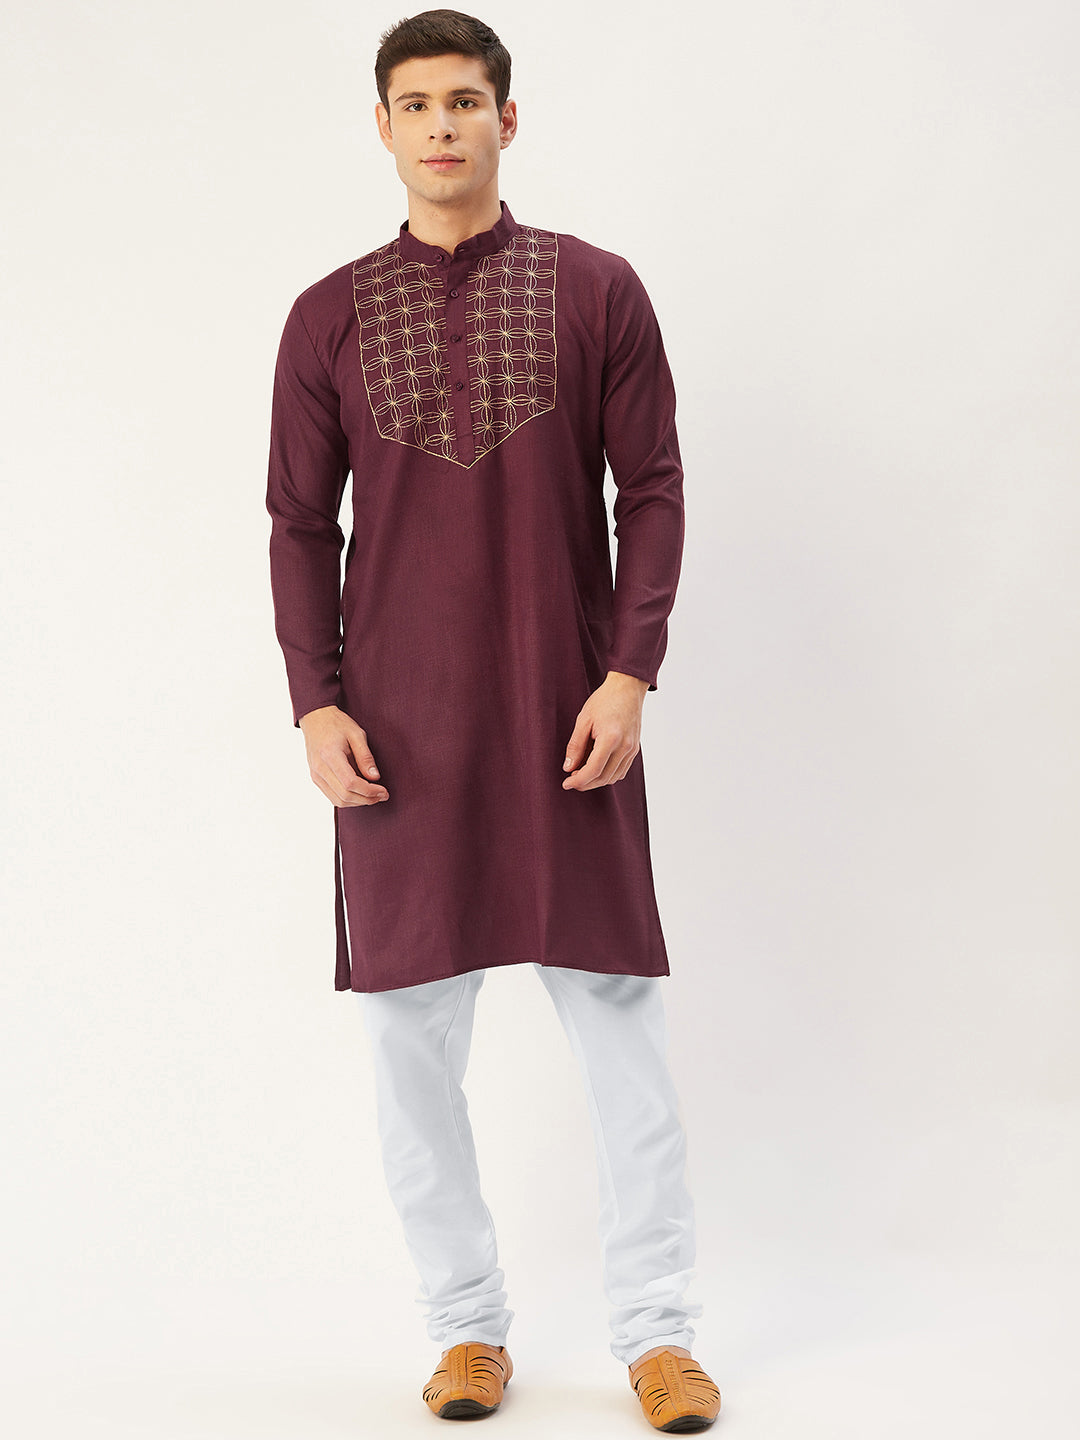 Men's Maroon Cotton Embroidered Kurta Pyjama ( JOKP 654 Maroon ) - Virat Fashions